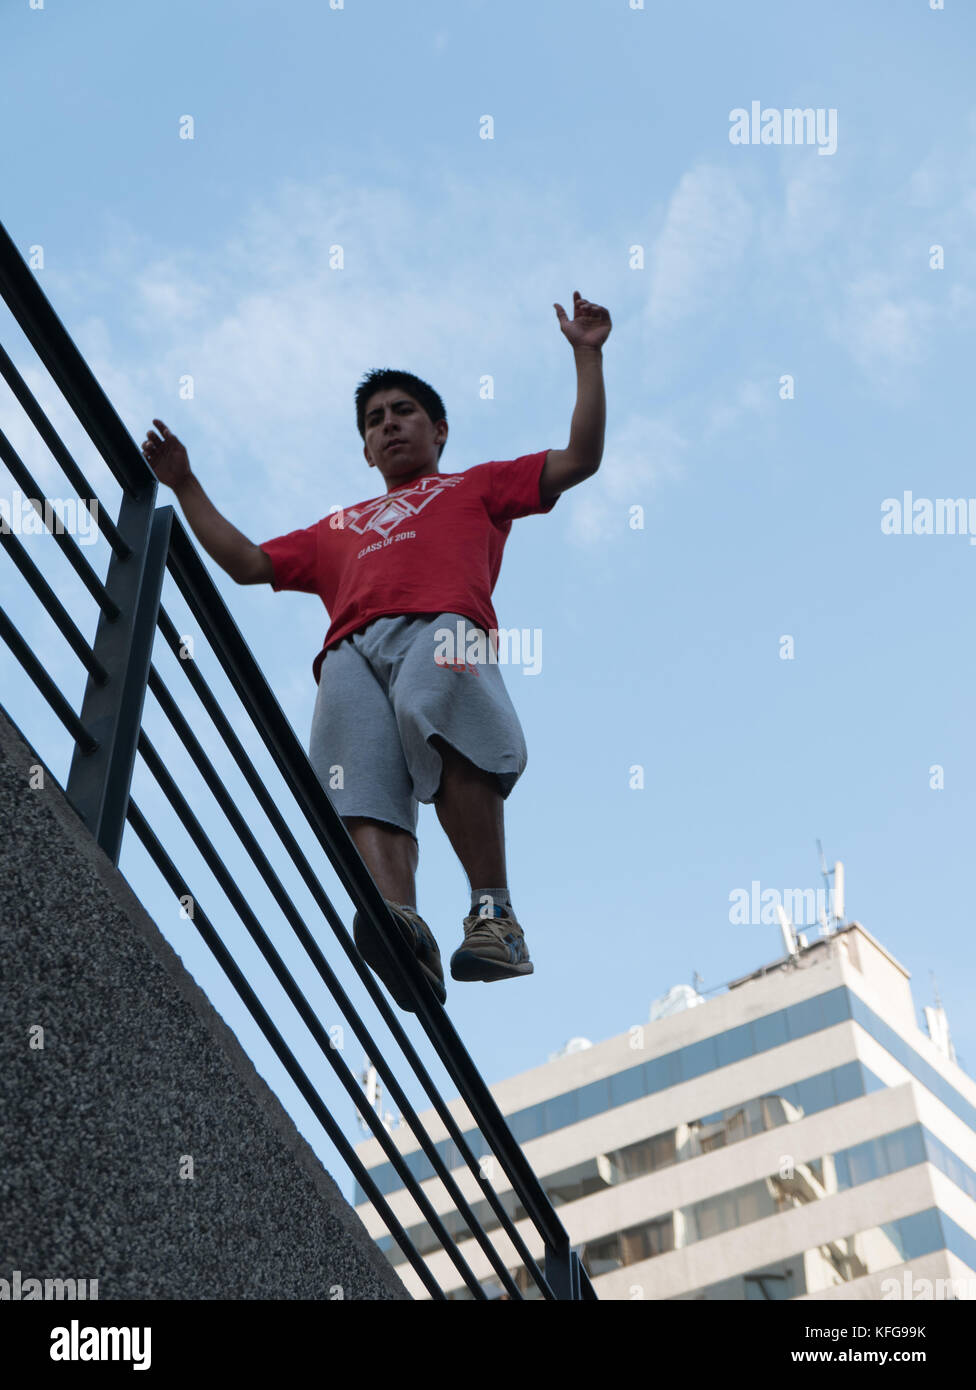 Giovane uomo in Santiago del Cile impegnato nel parkour in equilibrio su un corrimano in alto sopra la terra con il cielo blu e alto edificio bianco in background Foto Stock